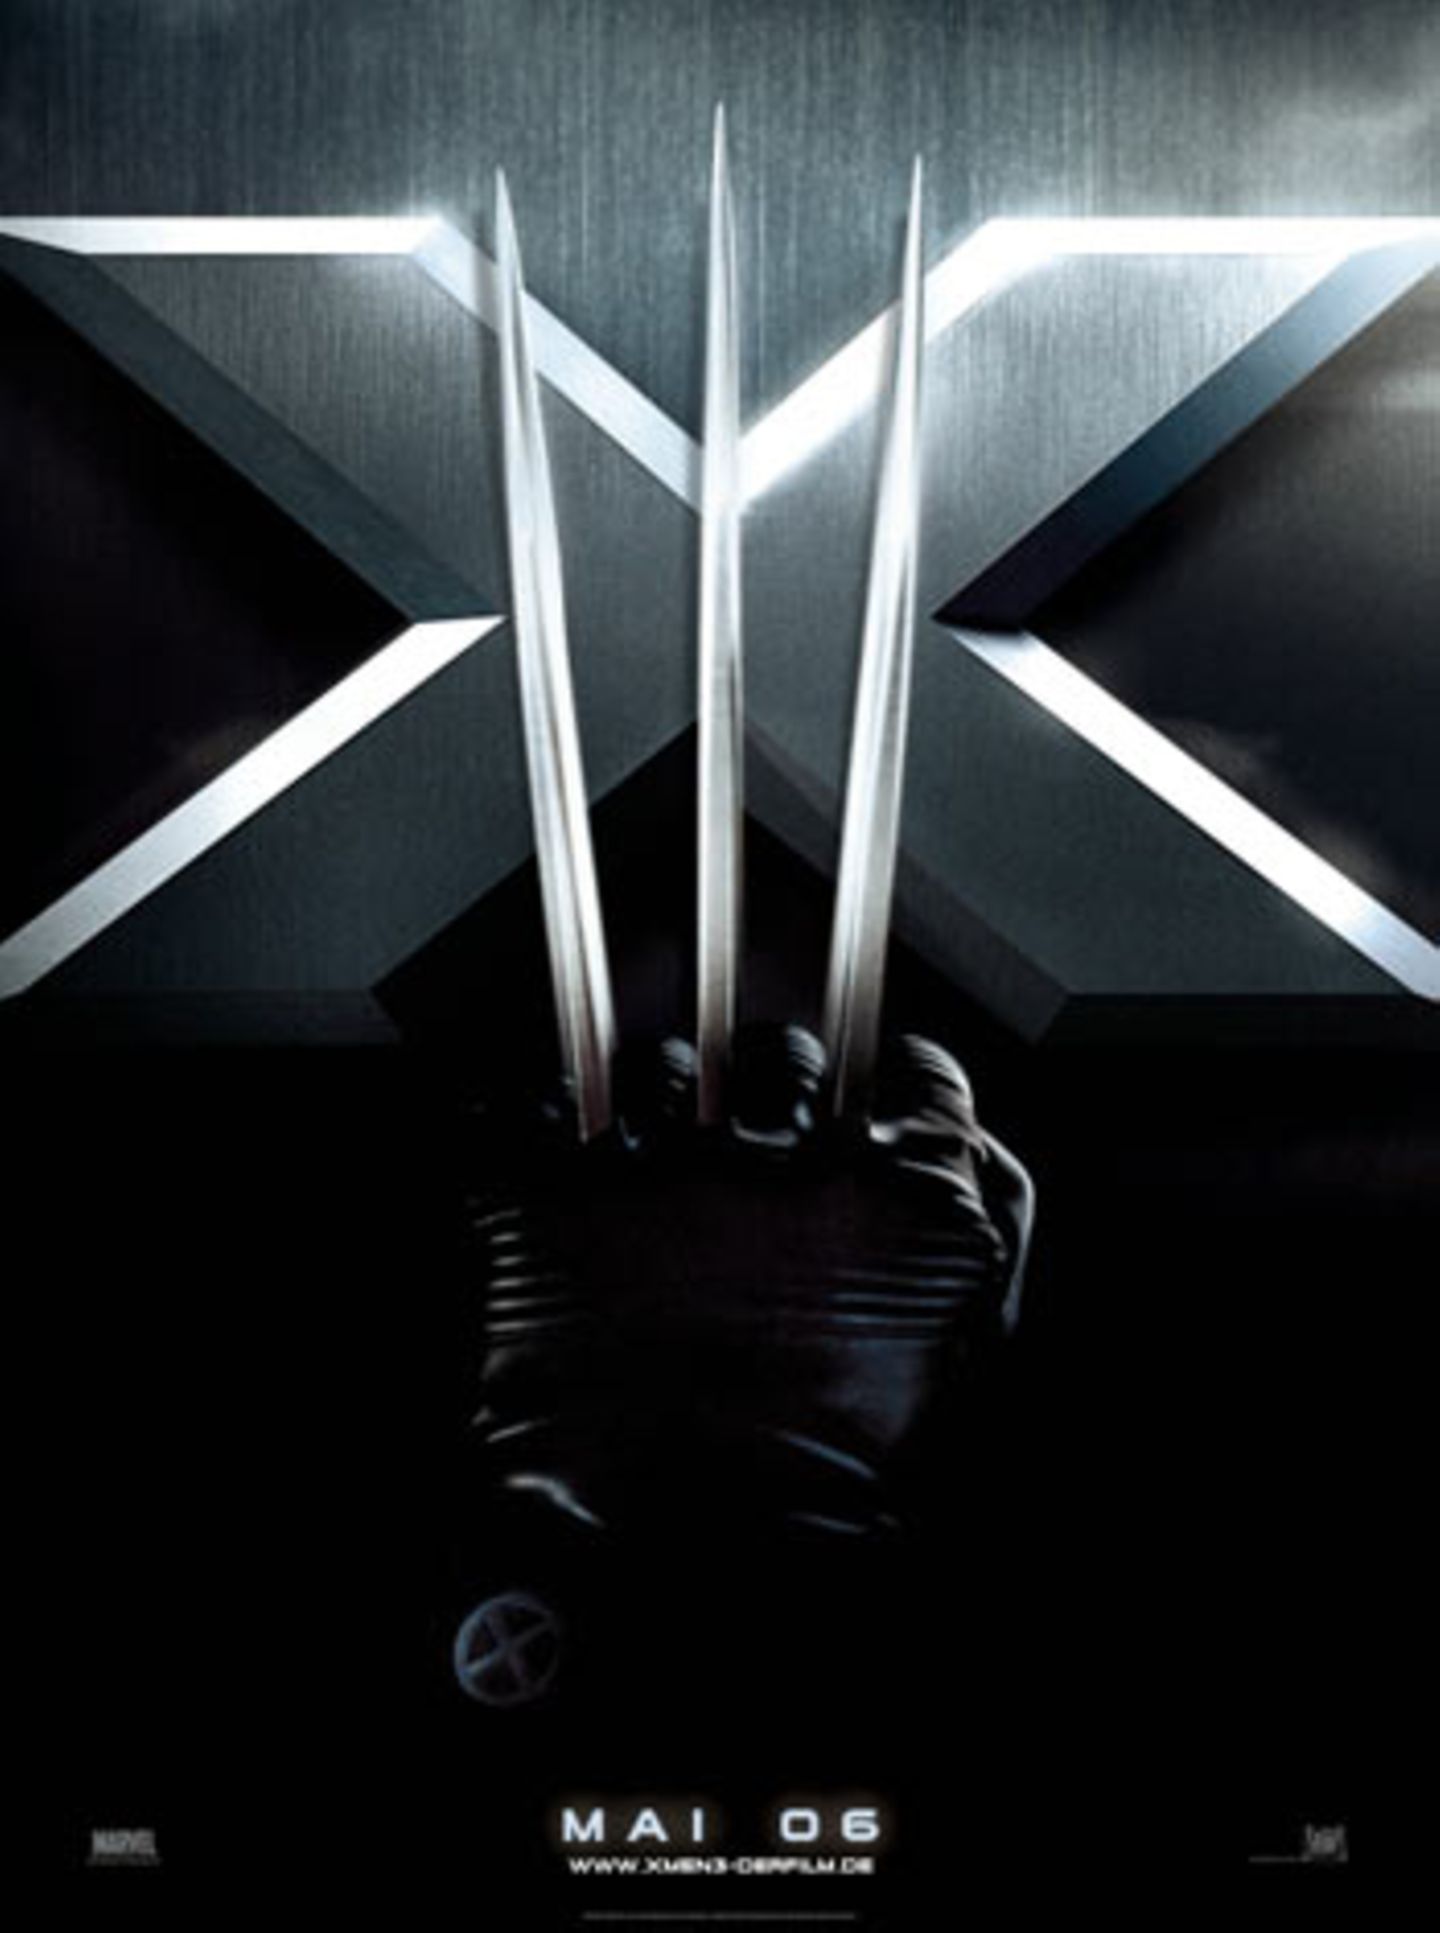 Der dritte Teil der X-Men-Reihe soll der Abschluss sein, sagen die Produzenten. Wer's glaubt ... Der letzte Film mit deutlicheren Fortsetzungs-Ermöglichungsszenen war "Underworld: Evolution"